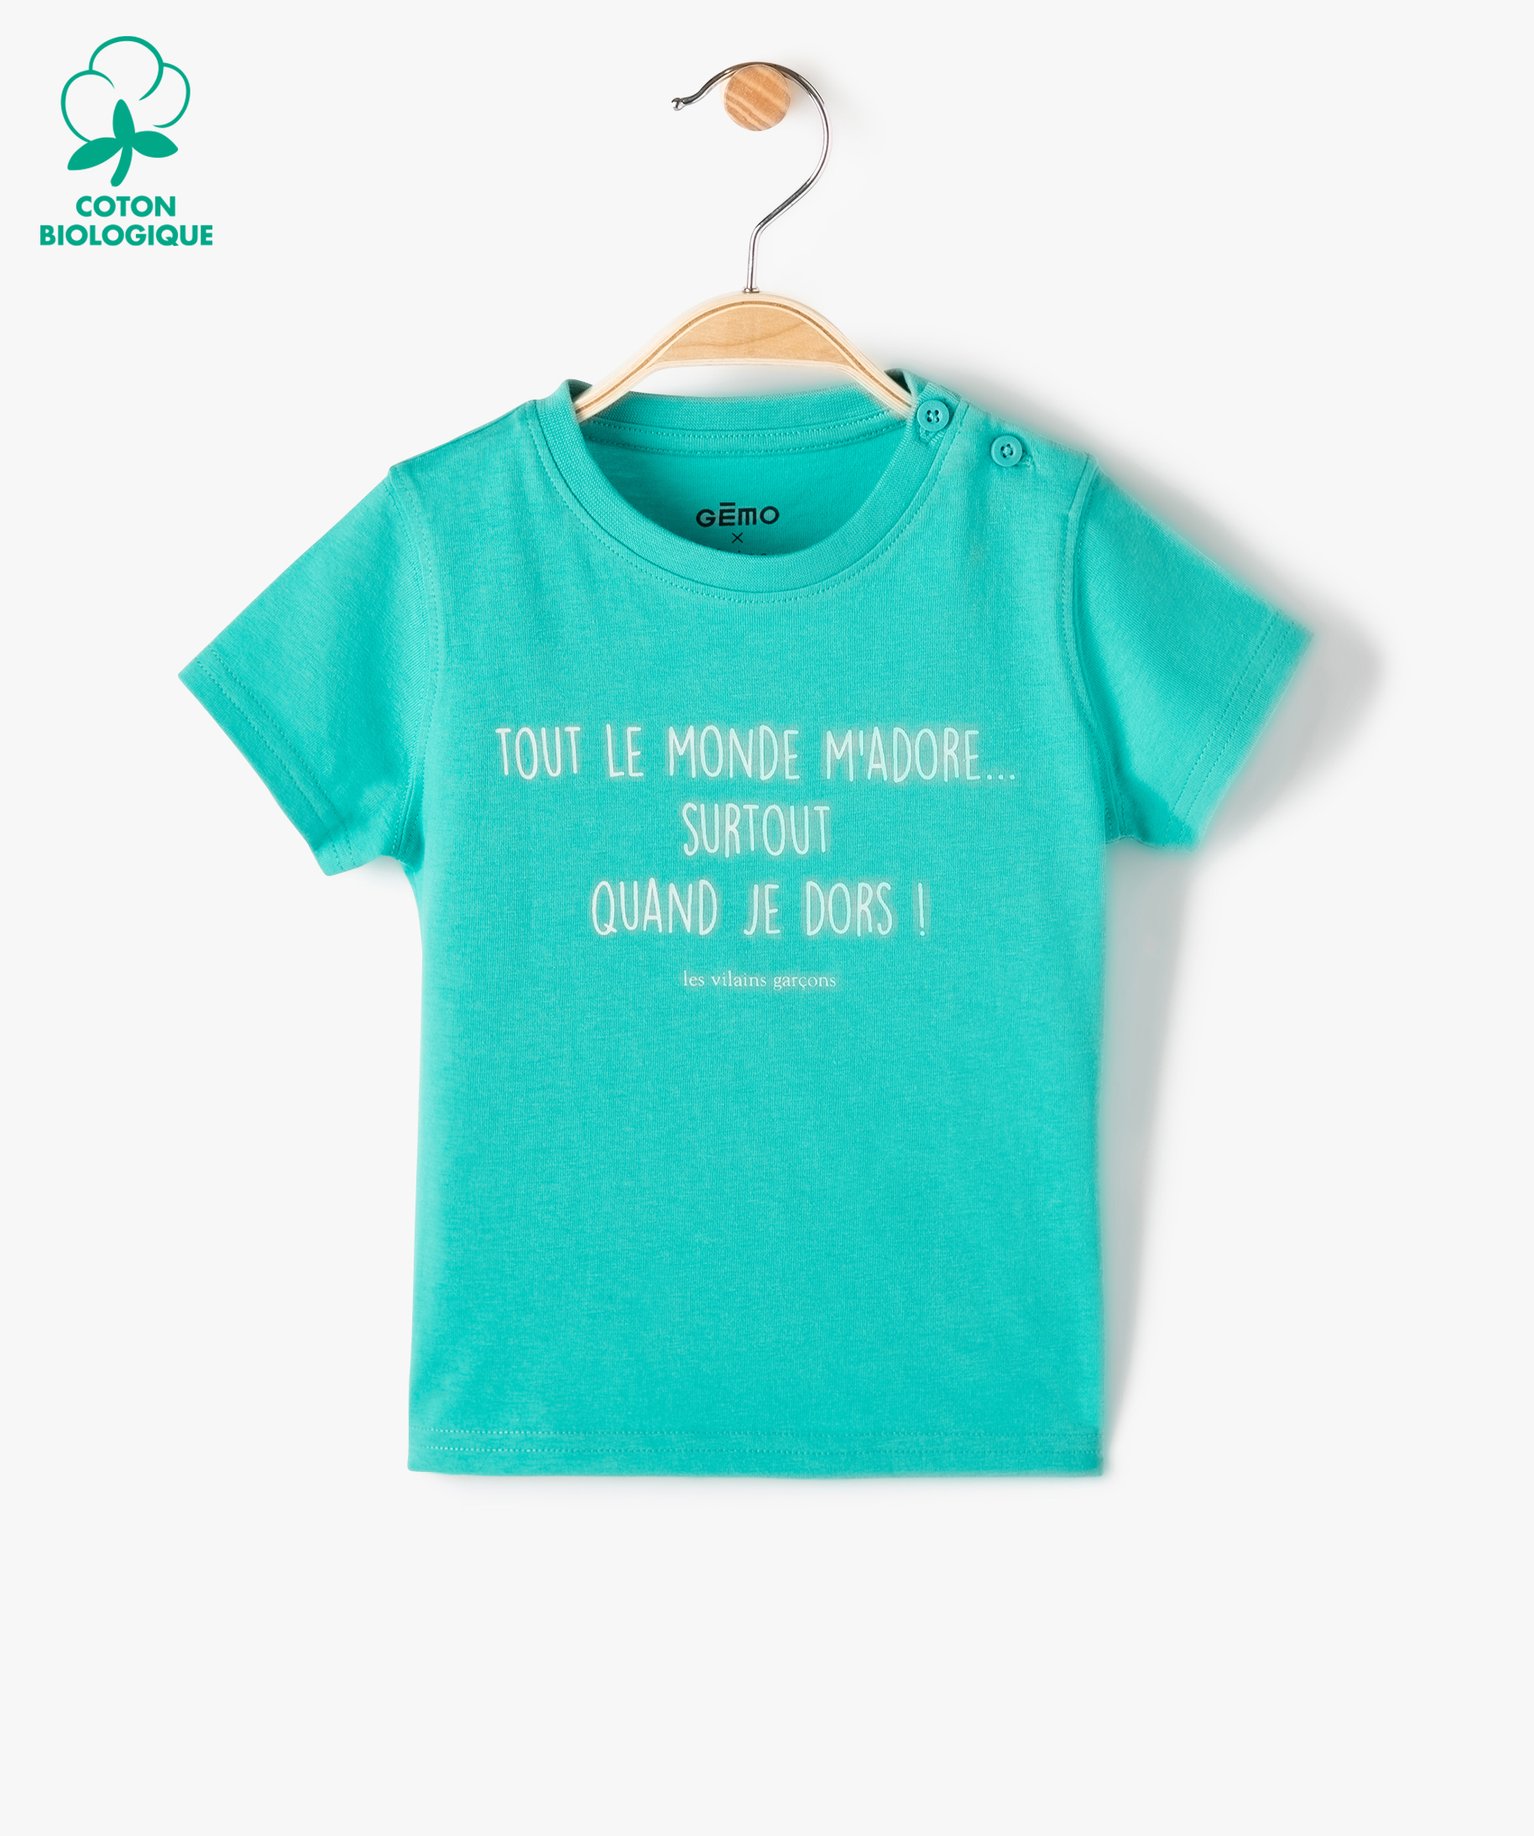 Tee-shirt bébé garçon à message humoristique - GEMO x Les Vilaines filles